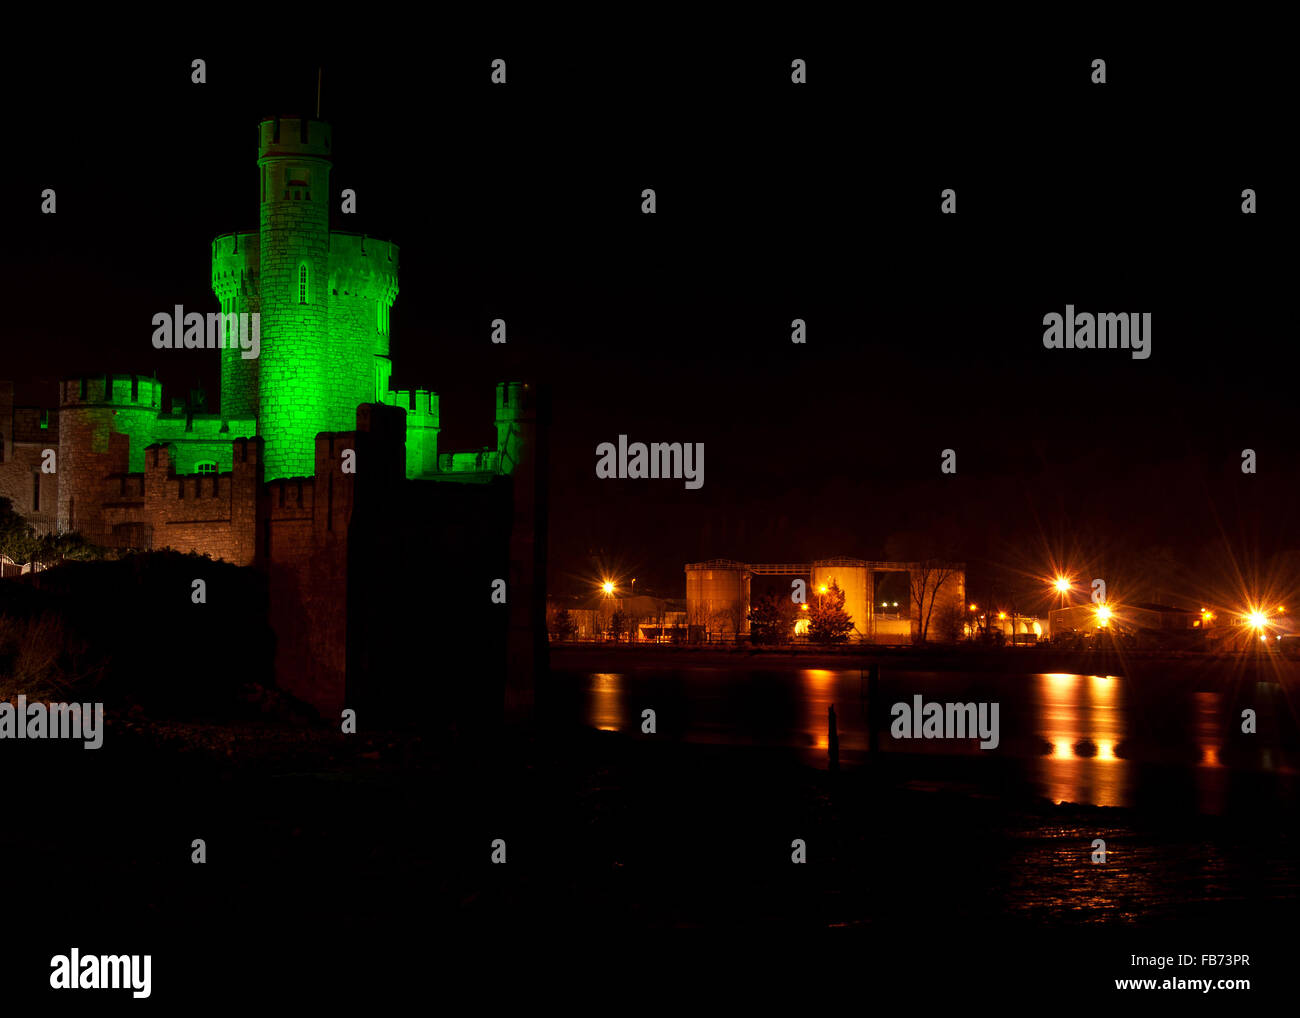 BlackRock Castle in Cork, Irland sonnt sich in einen grünen Farbton in der Nacht vom St. Patricks Day. Stockfoto